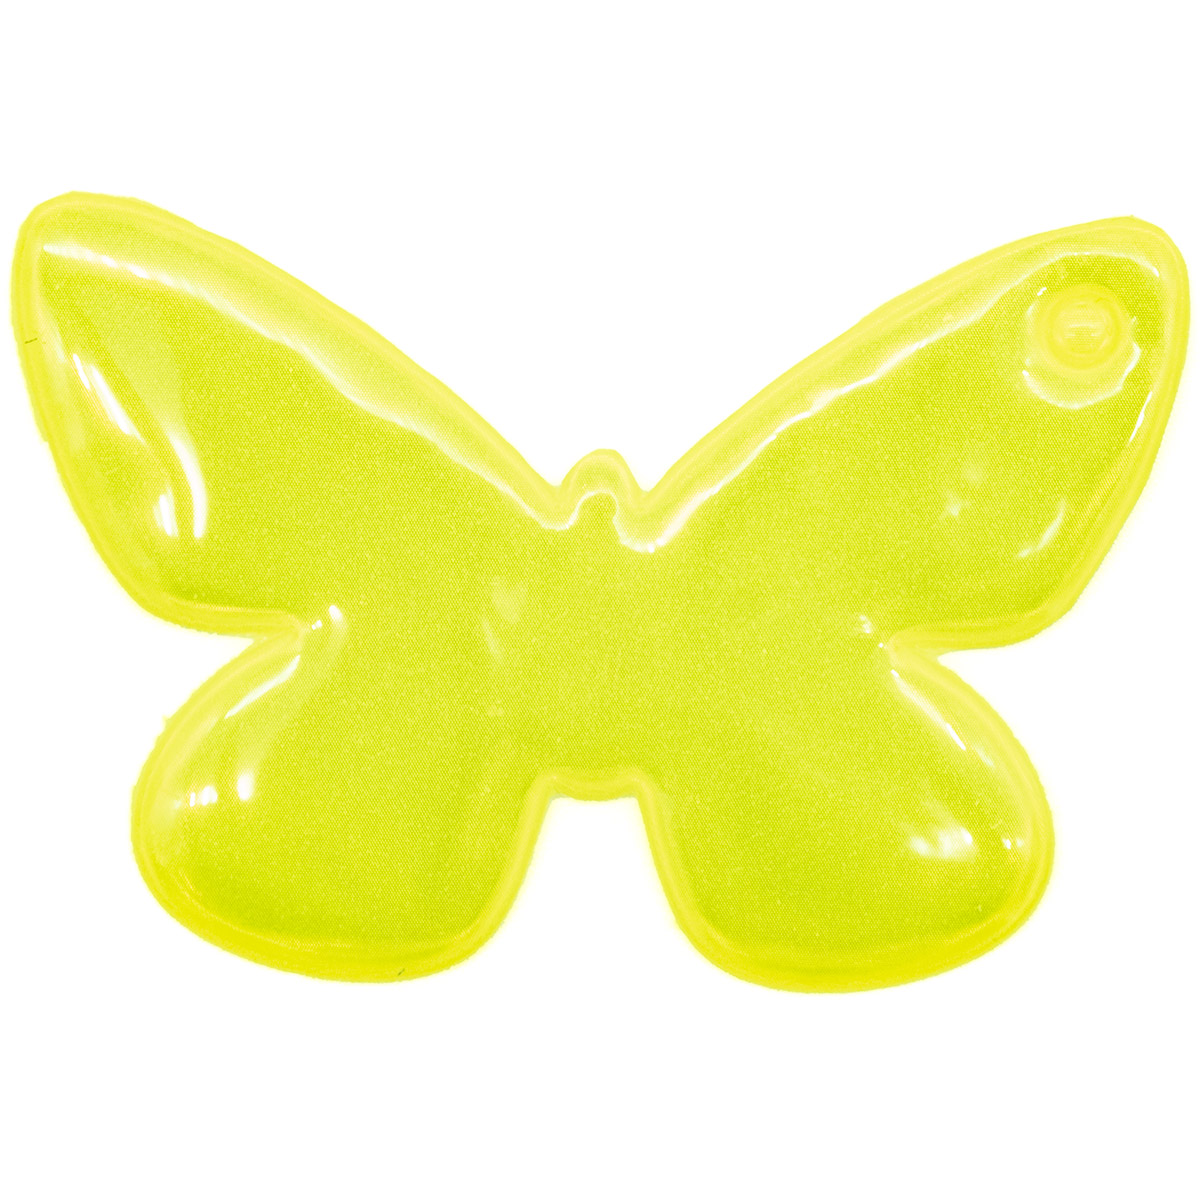 Световозвращатель подвеска Бабочки, ПВХ, 7 см (желто-лимонный)